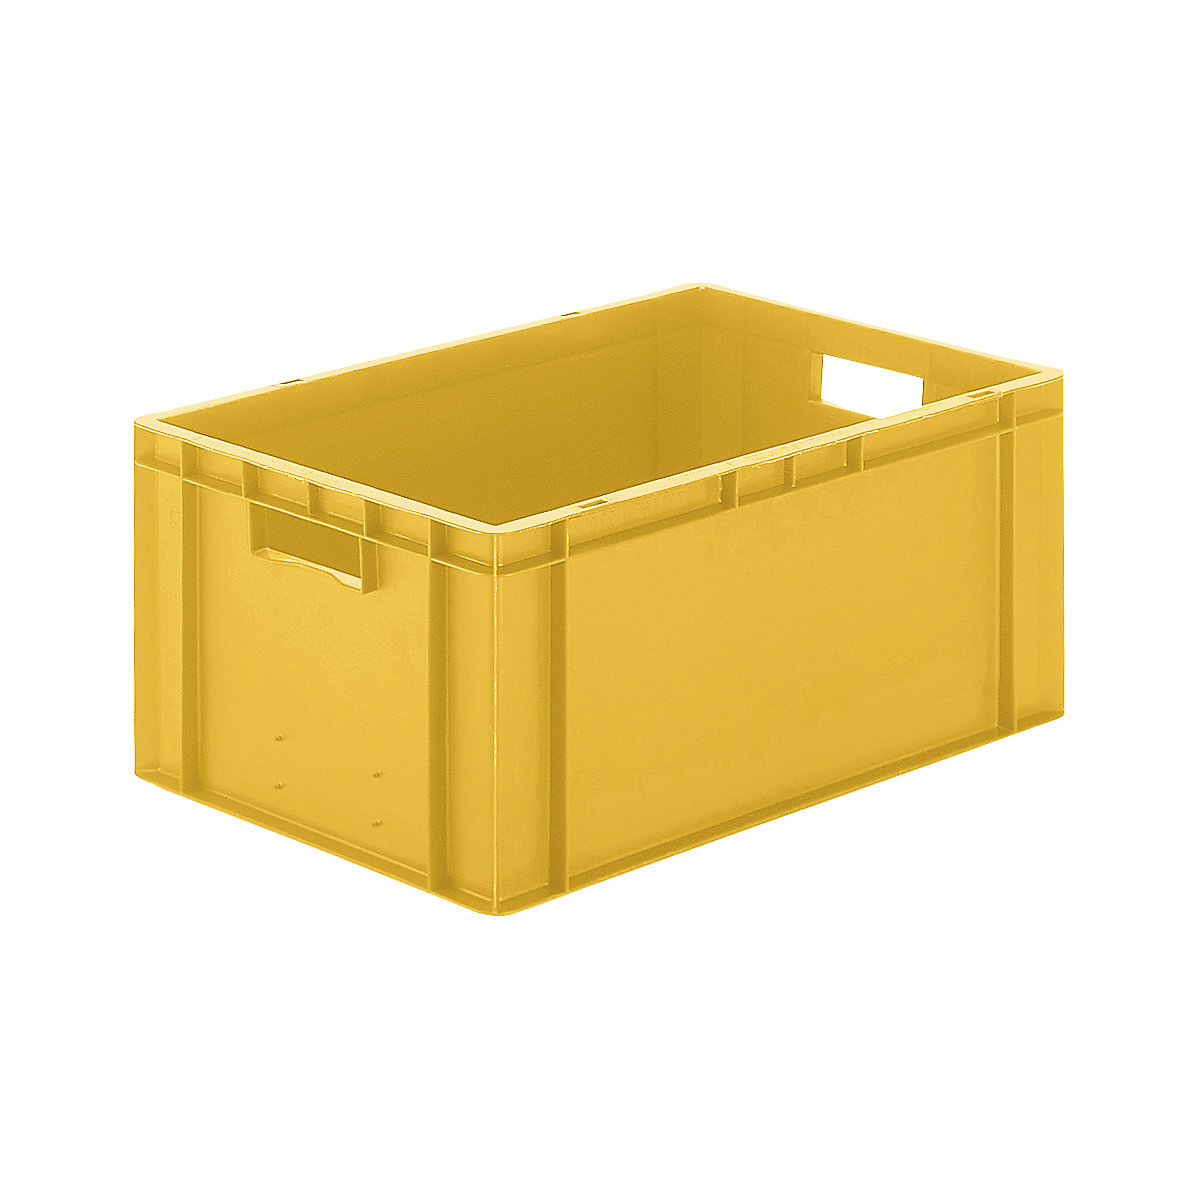 Euro-Format-Stapelbehälter, Wände und Boden geschlossen, LxBxH 600 x 400 x 270 mm, gelb, VE 5 Stk